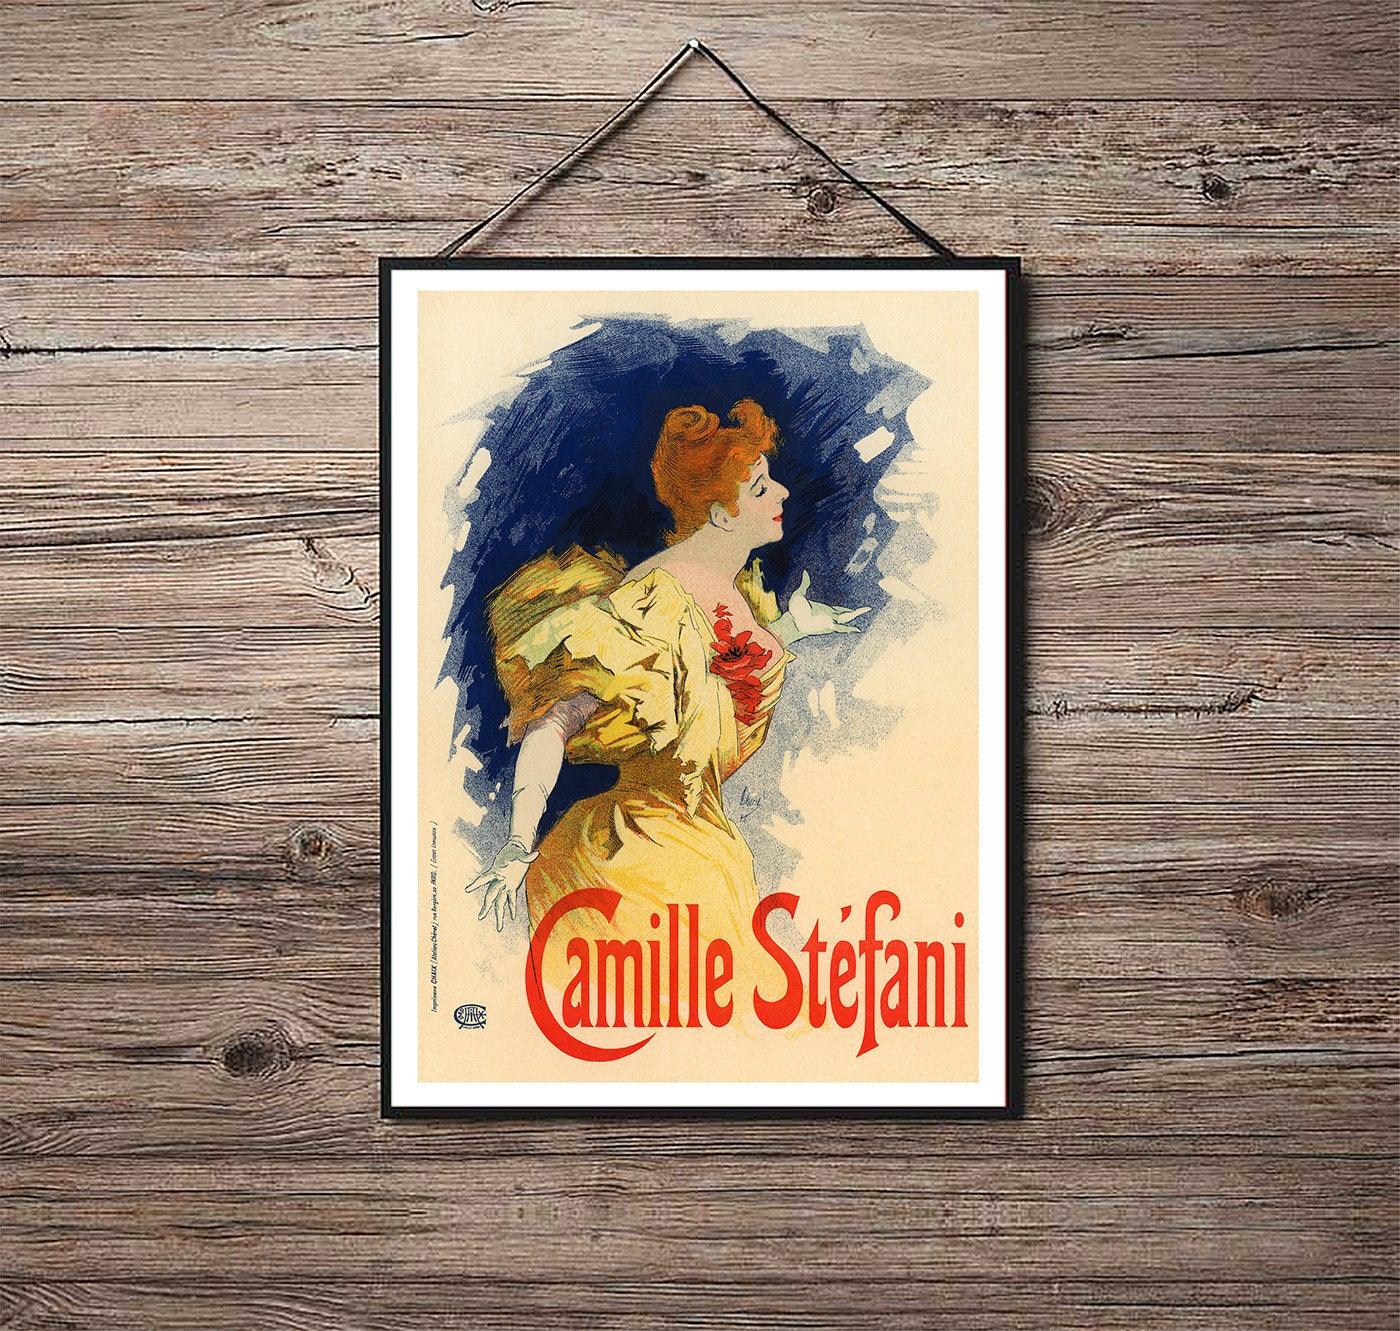 Camille Stefani - 1896 - Art Nouveau - Classic Posters